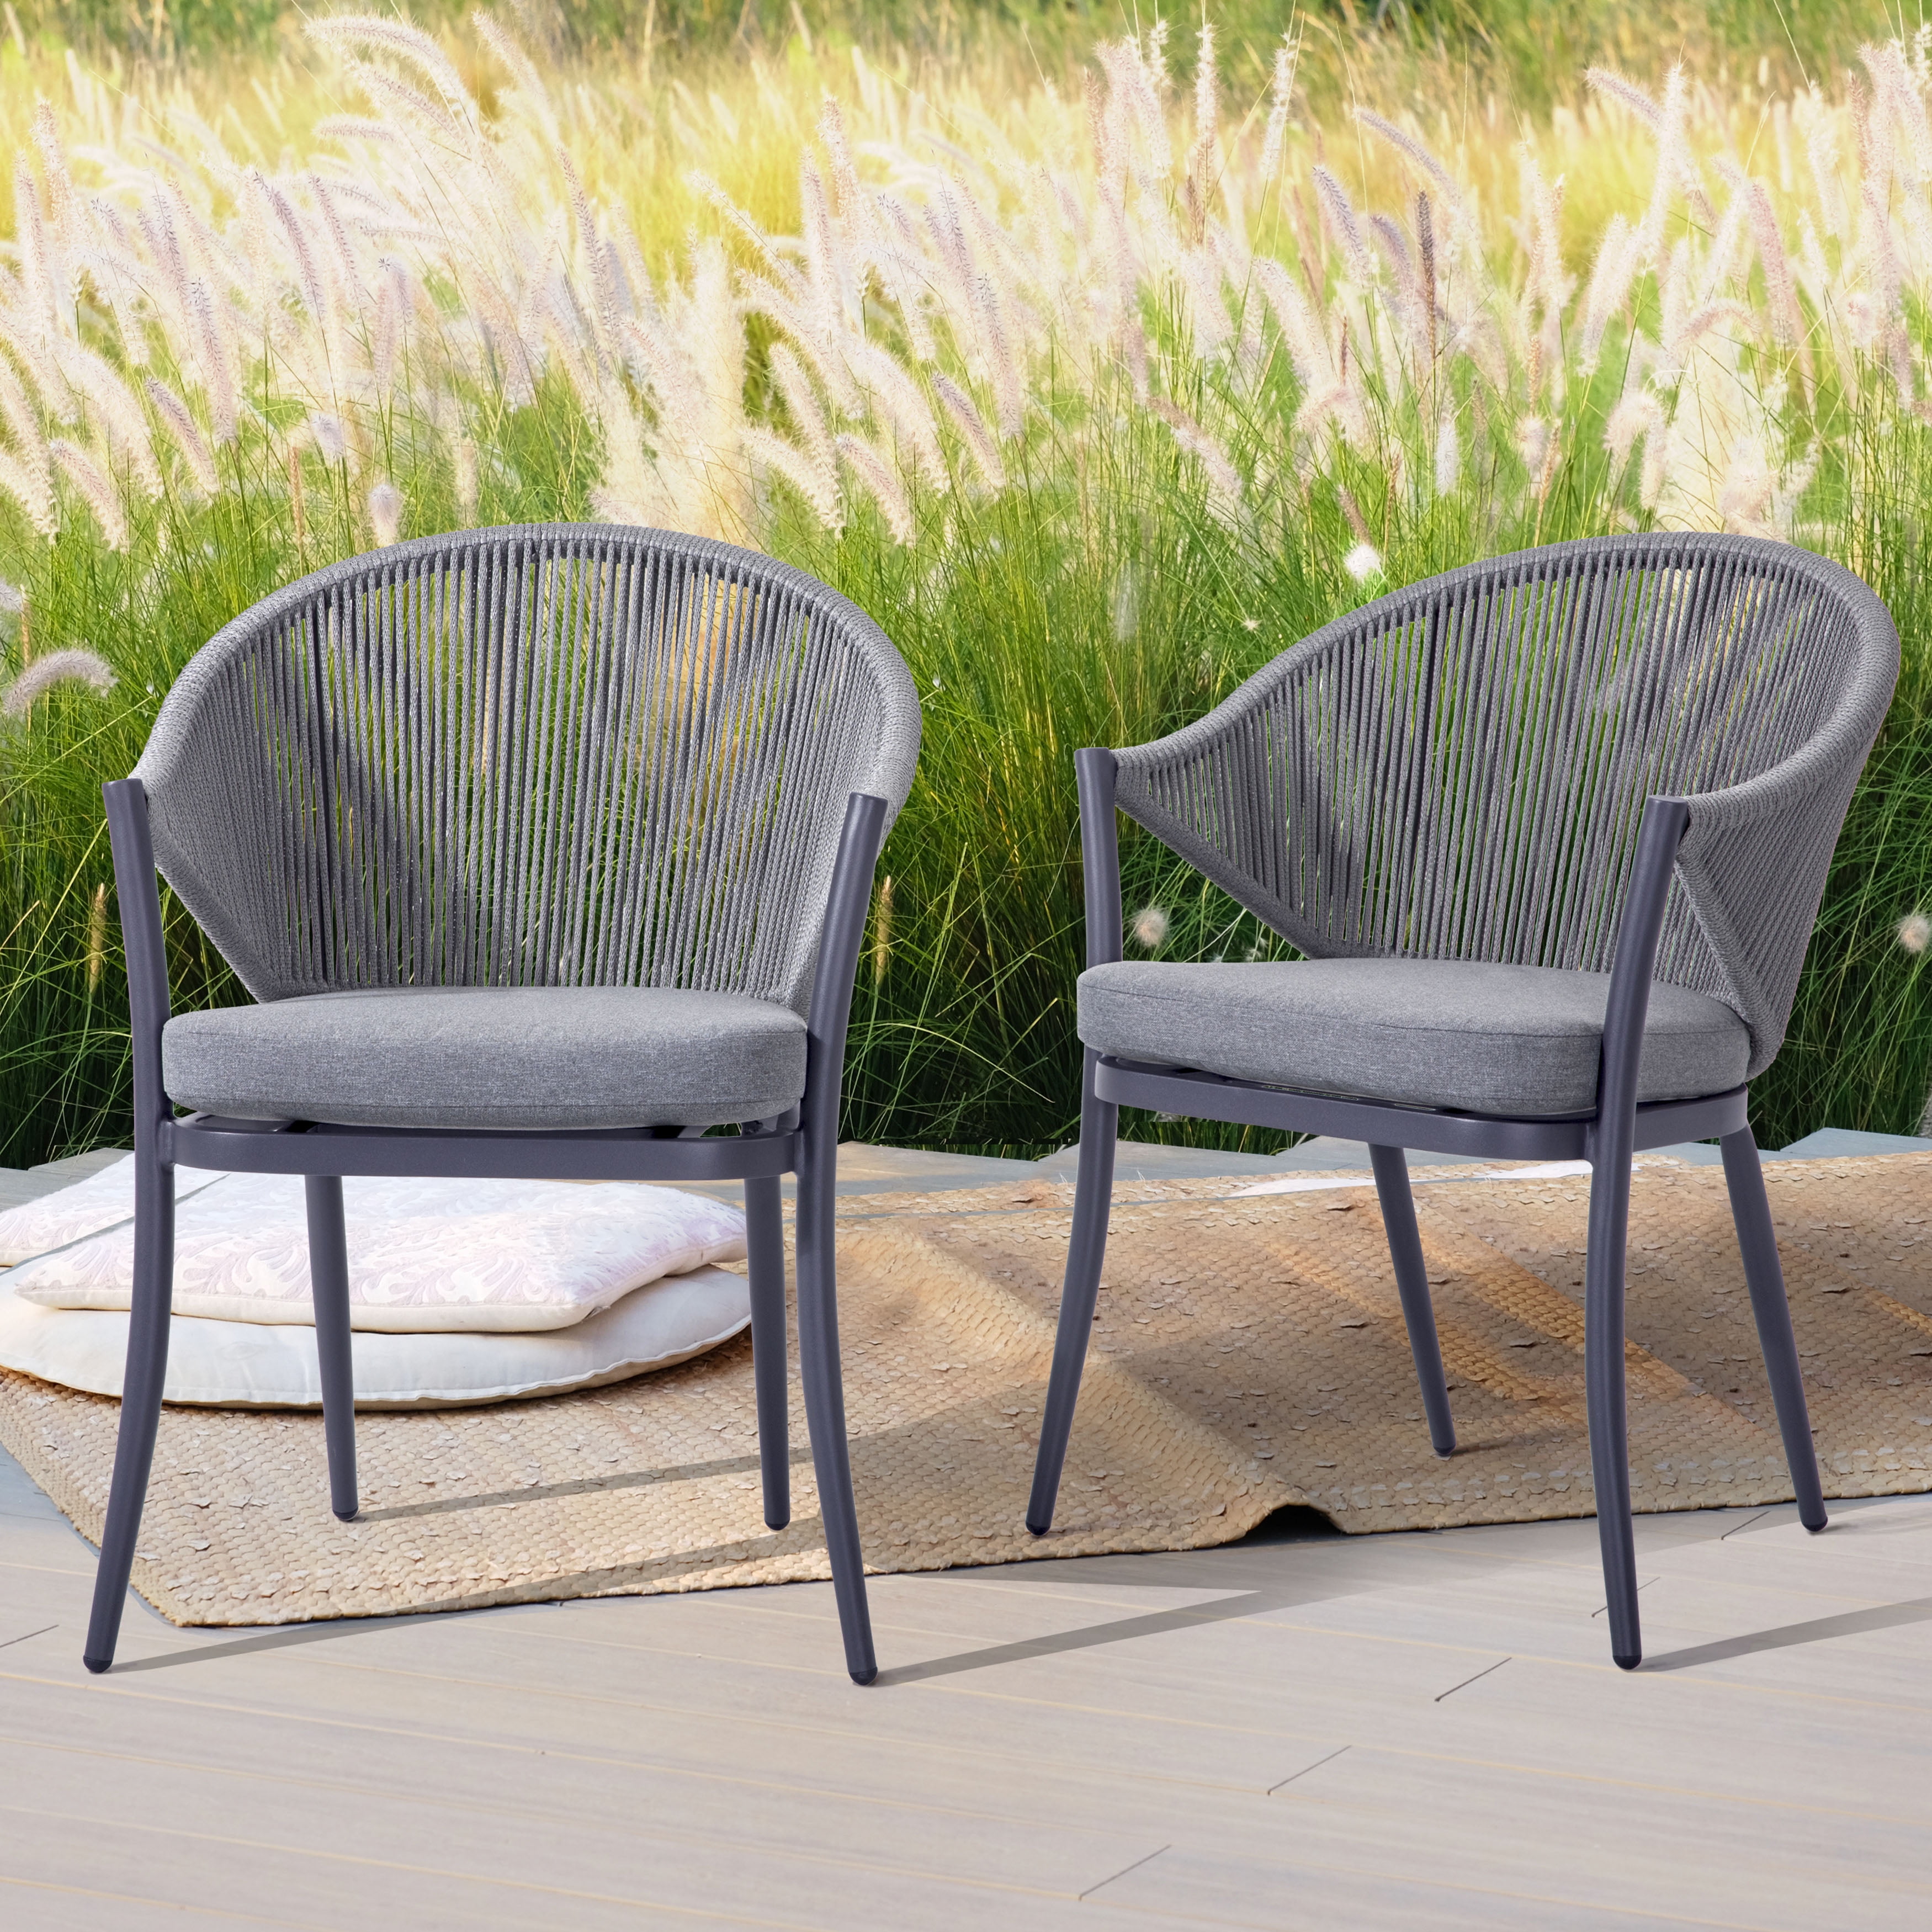  amazon aluminium garden furniture